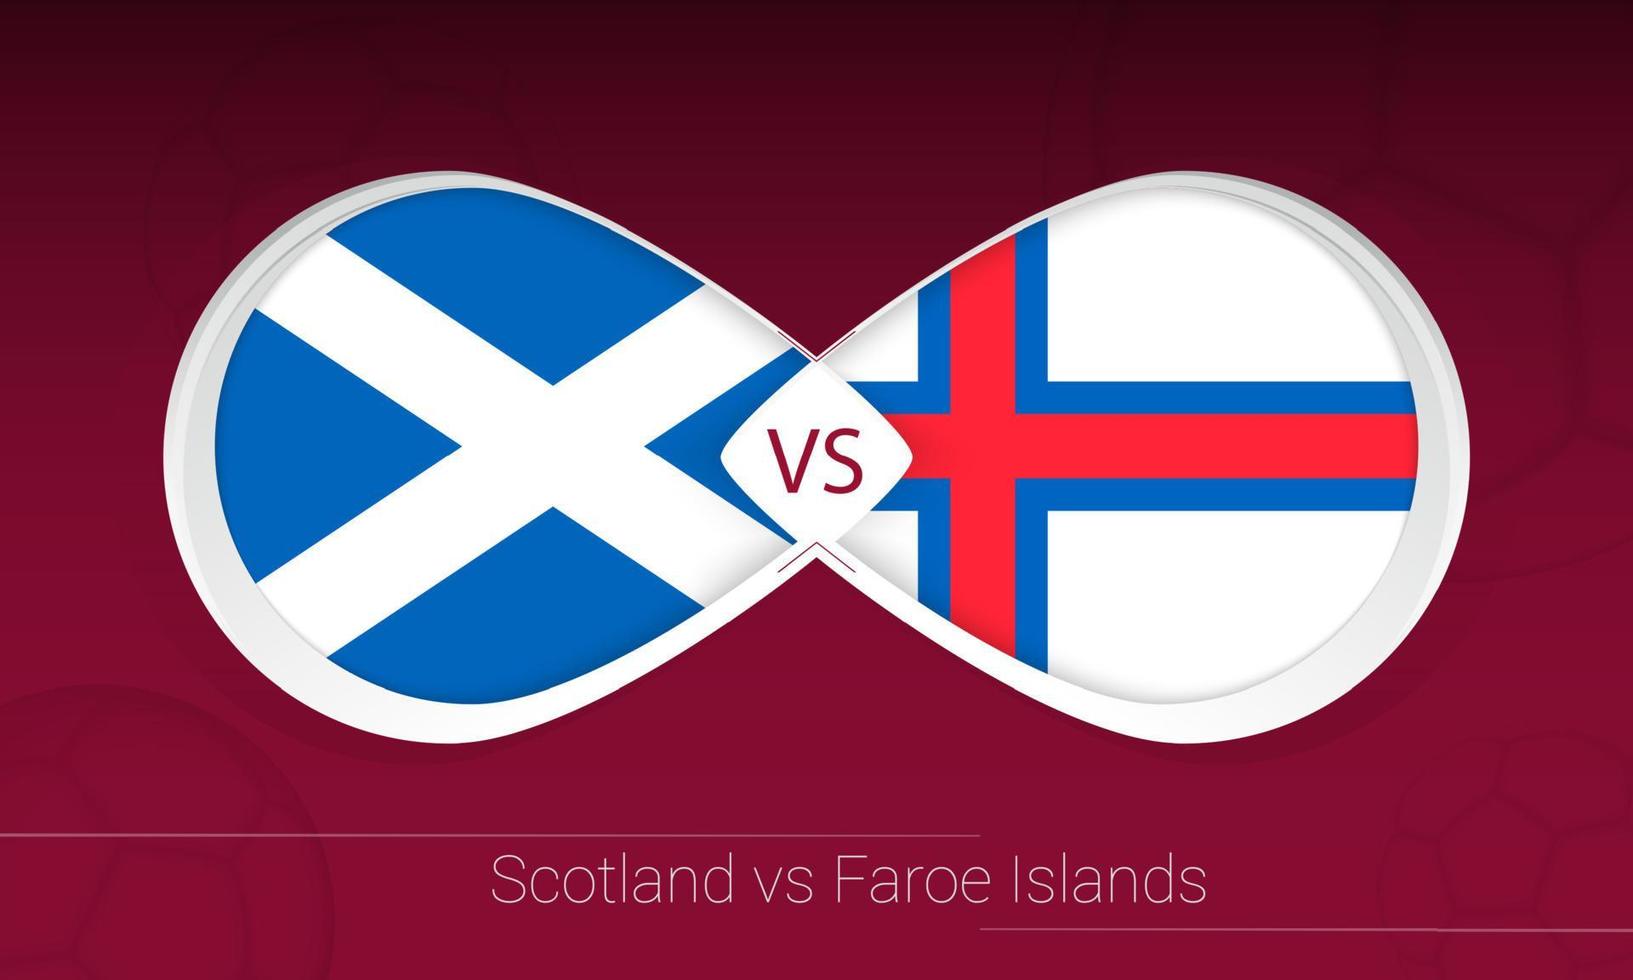 Scozia vs Isole Faroe nella competizione calcistica, gruppo f. contro l'icona sullo sfondo del calcio. vettore